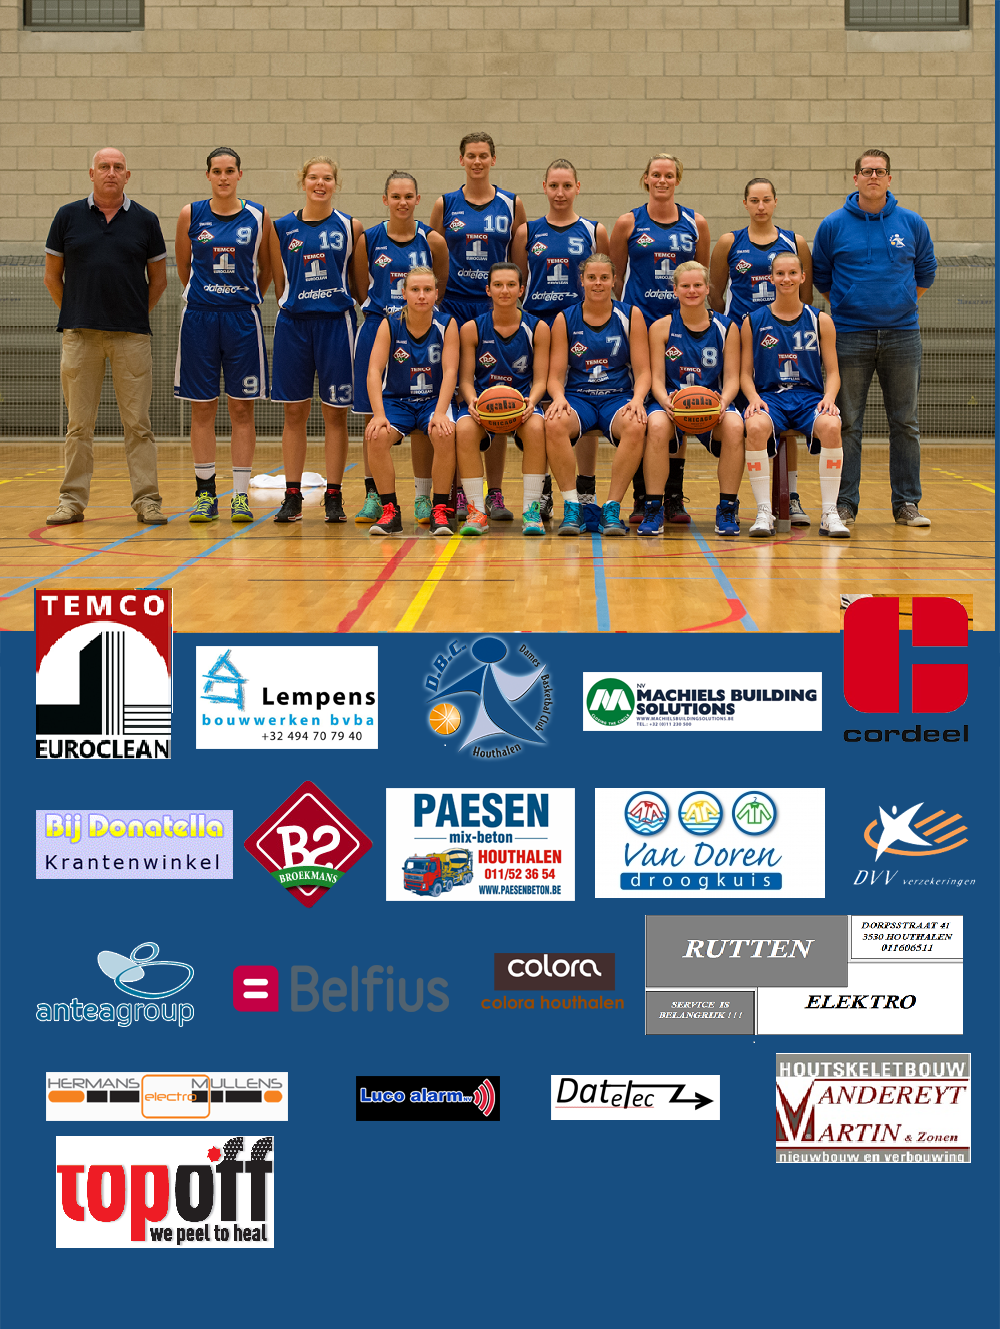 Saison 2014/2015 - Houthalen veut donner leur chance aux jeunes Limbourgeoises